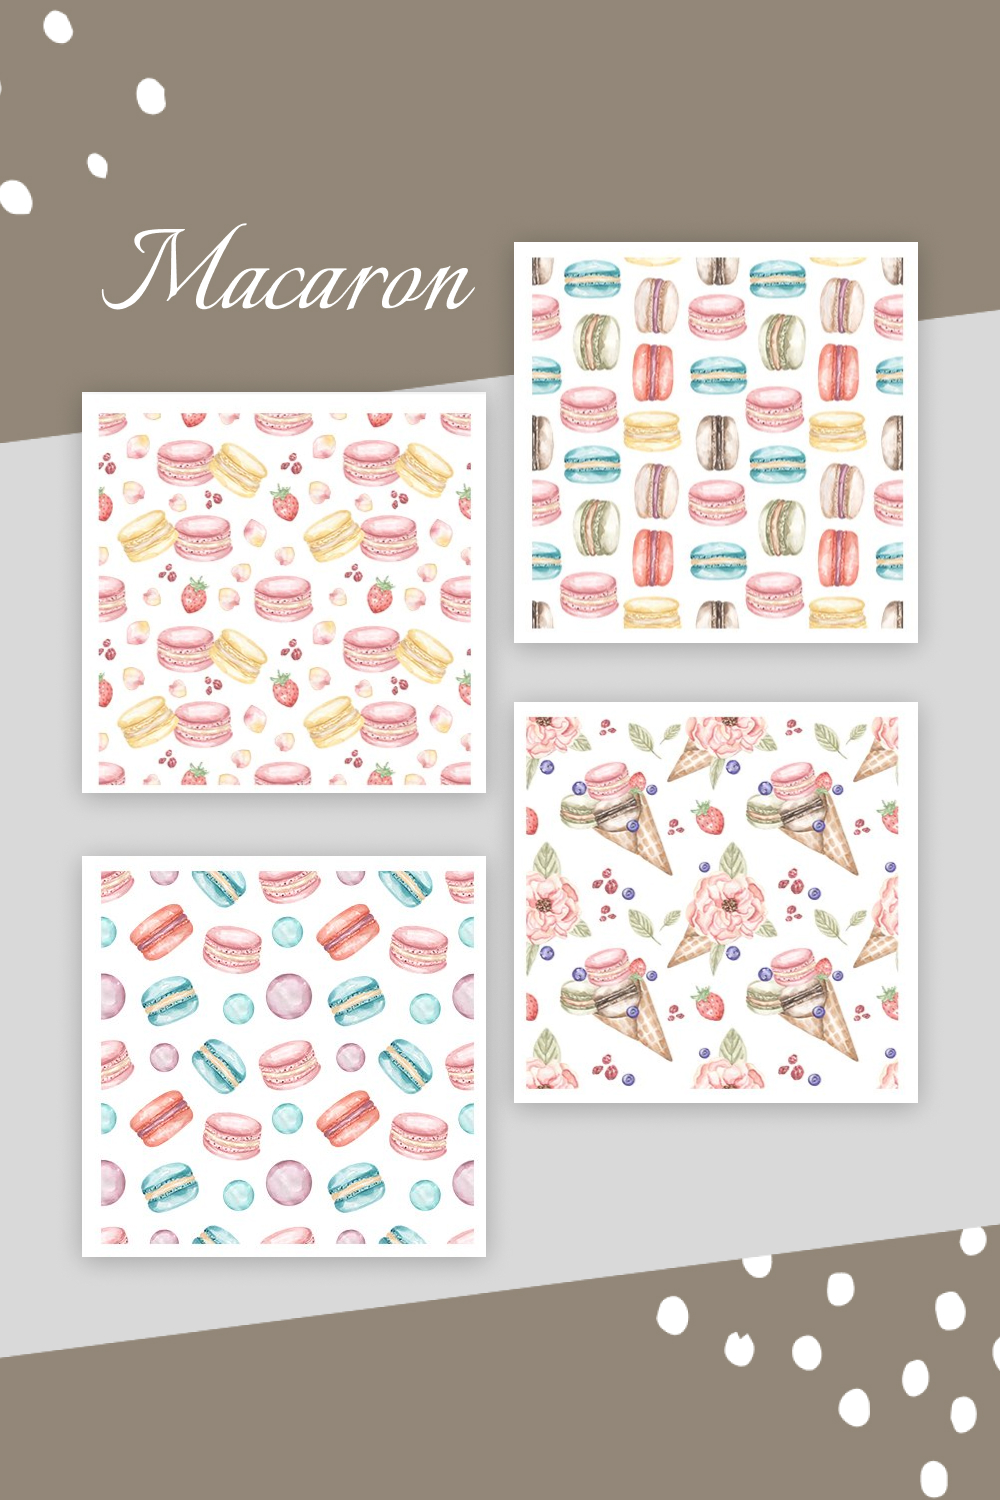 watercolor macaron collection 1